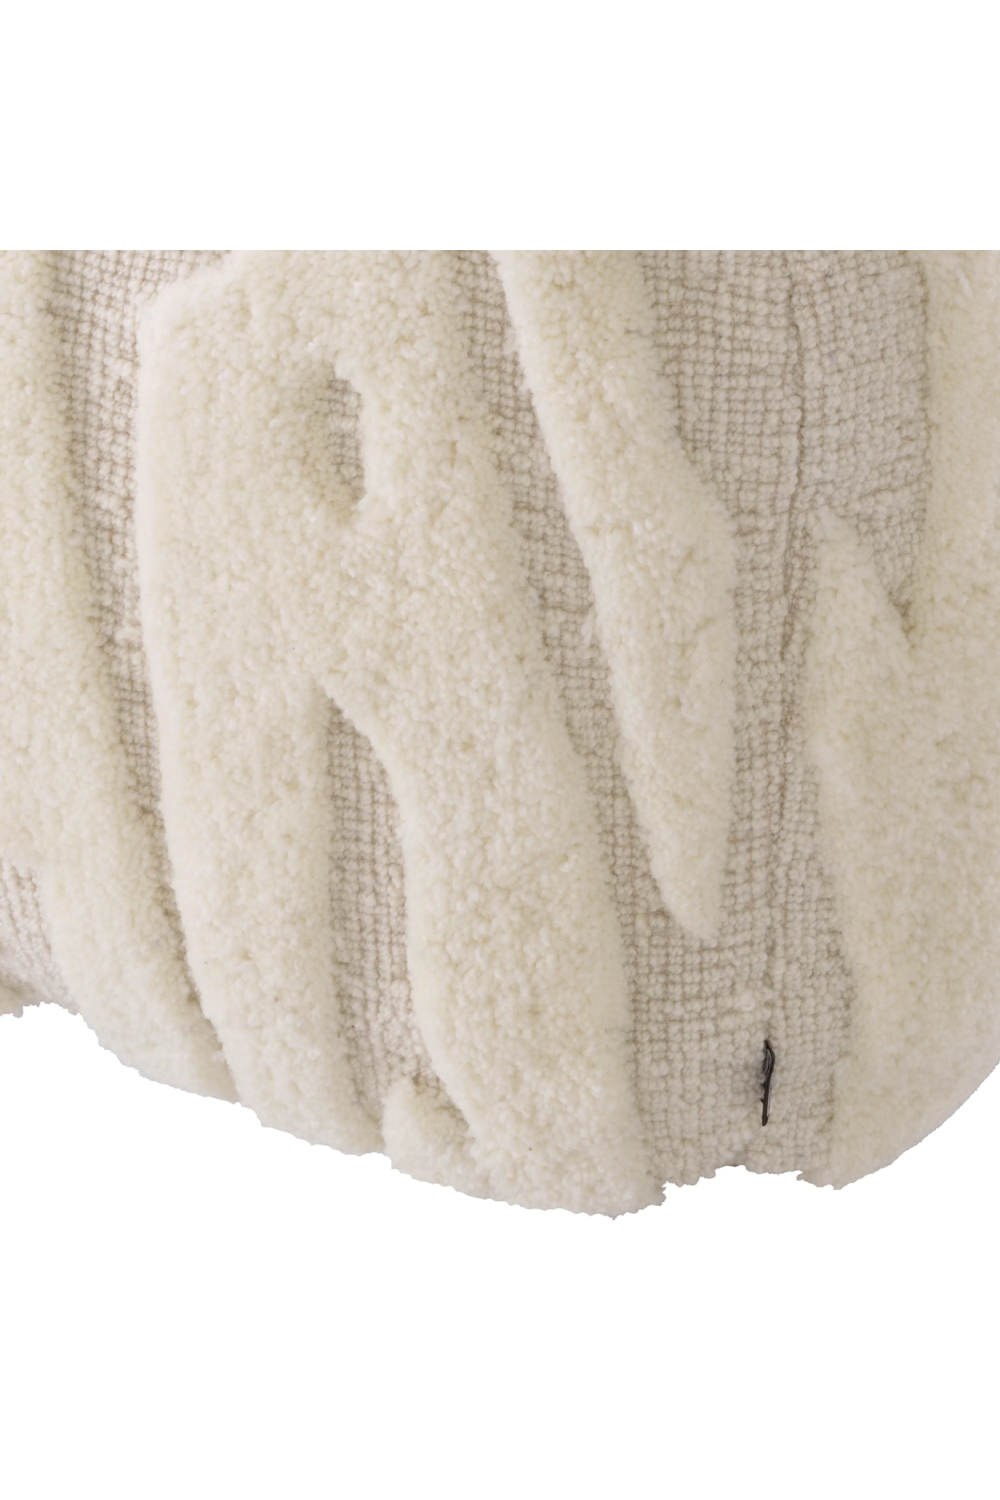 White Hand-Woven Wool Stool | Eichholtz Zenon | Oroa.com